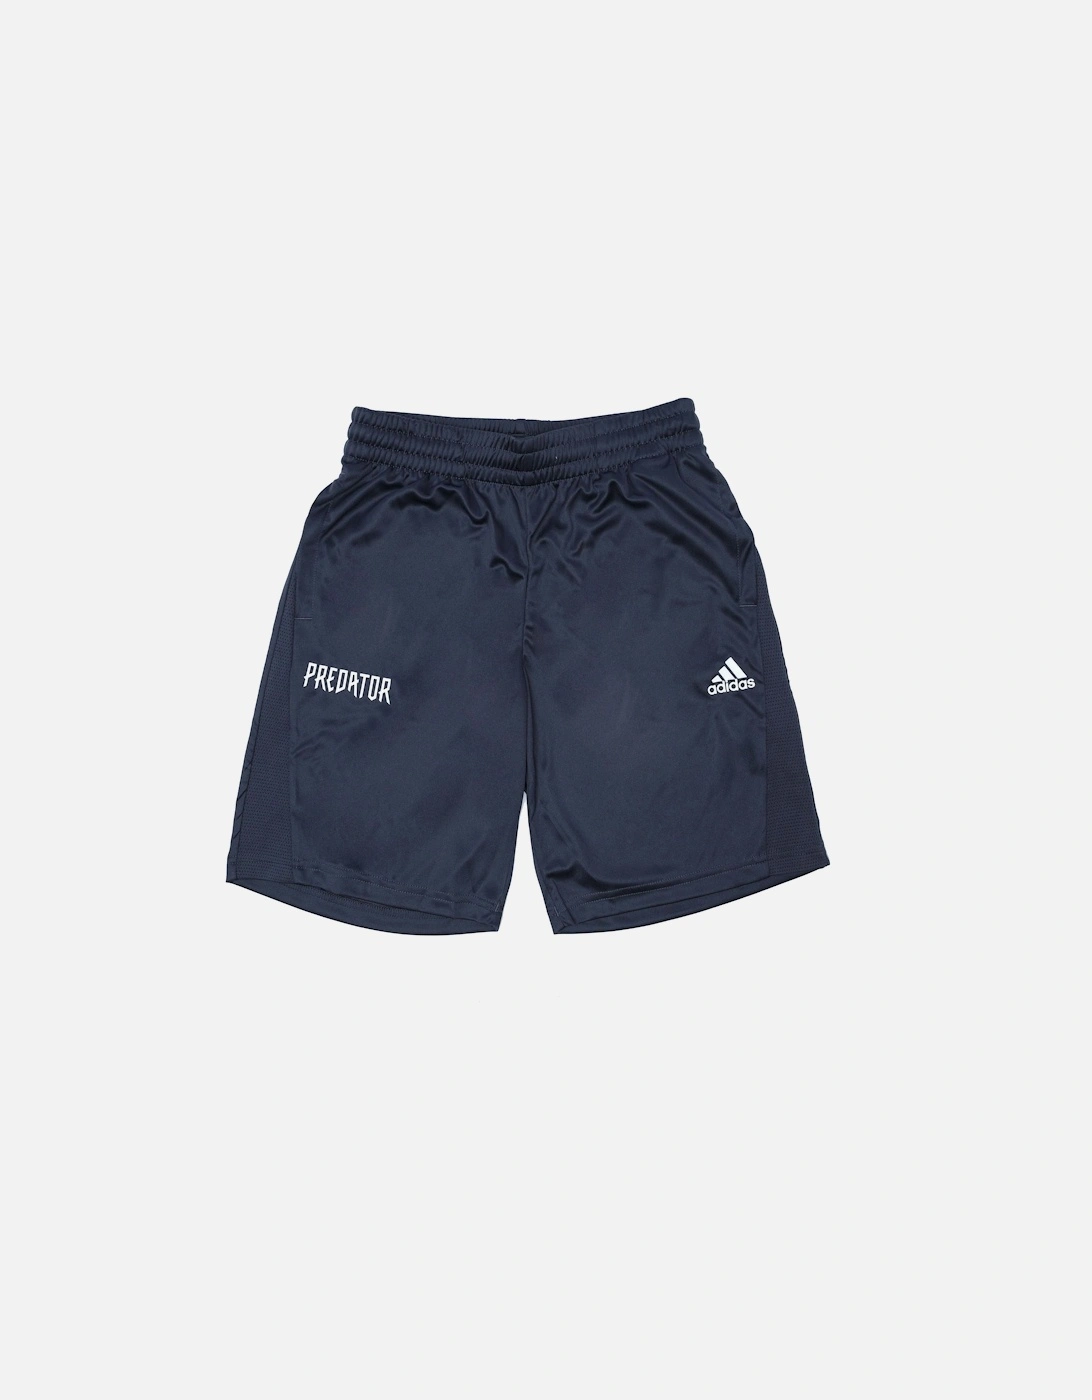 Boys Predator Shorts, 3 of 2